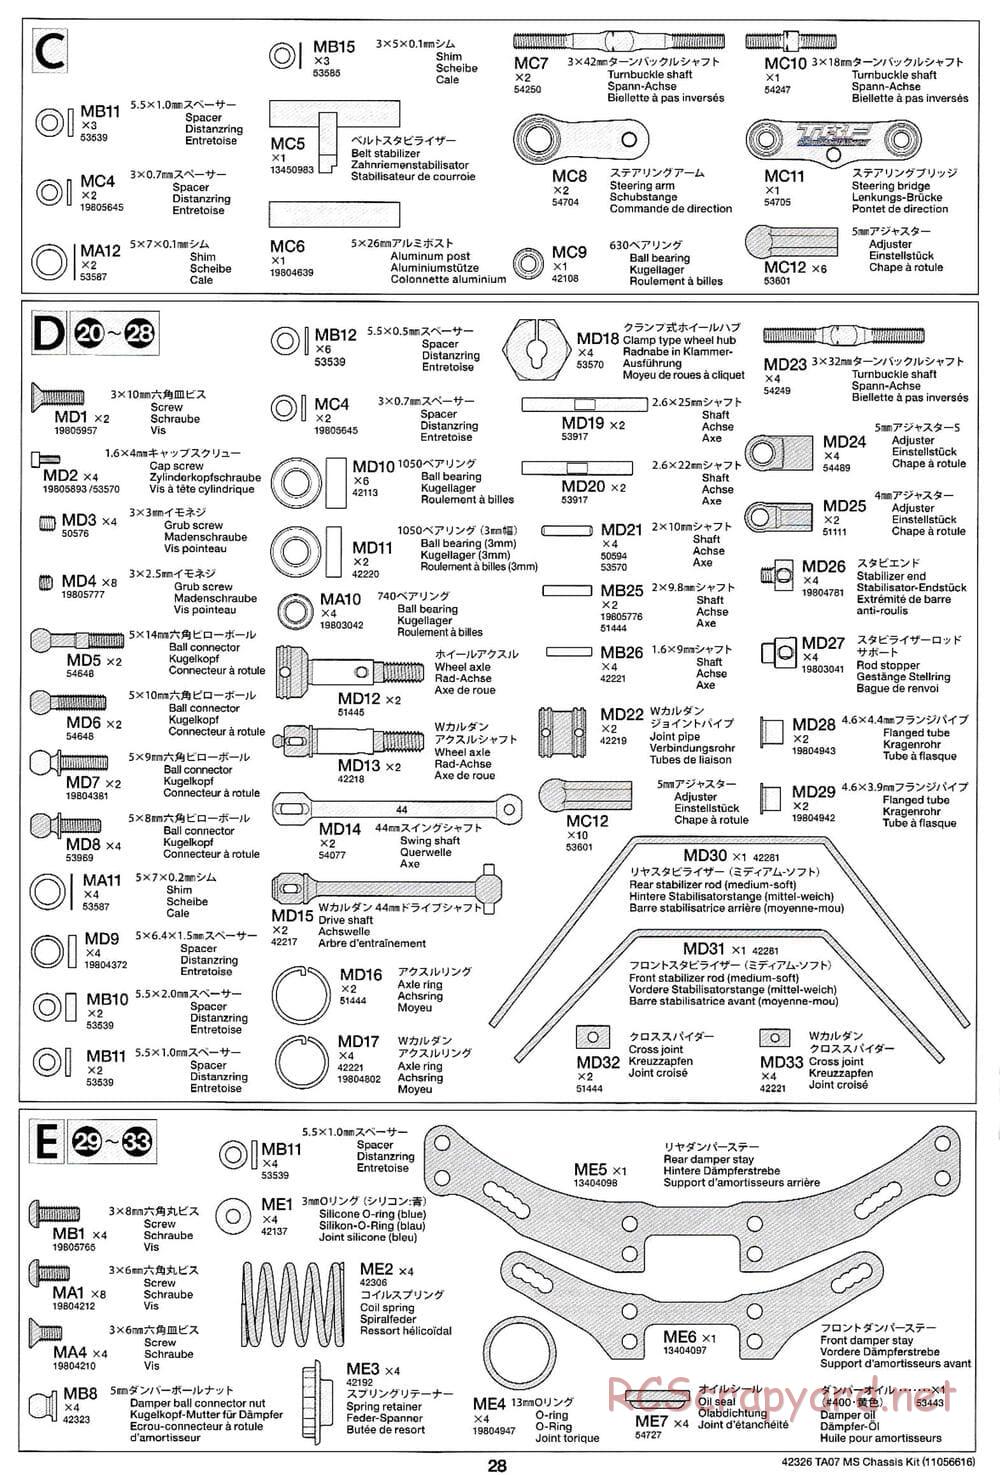 Tamiya - TA07 MS Chassis - Manual - Page 28